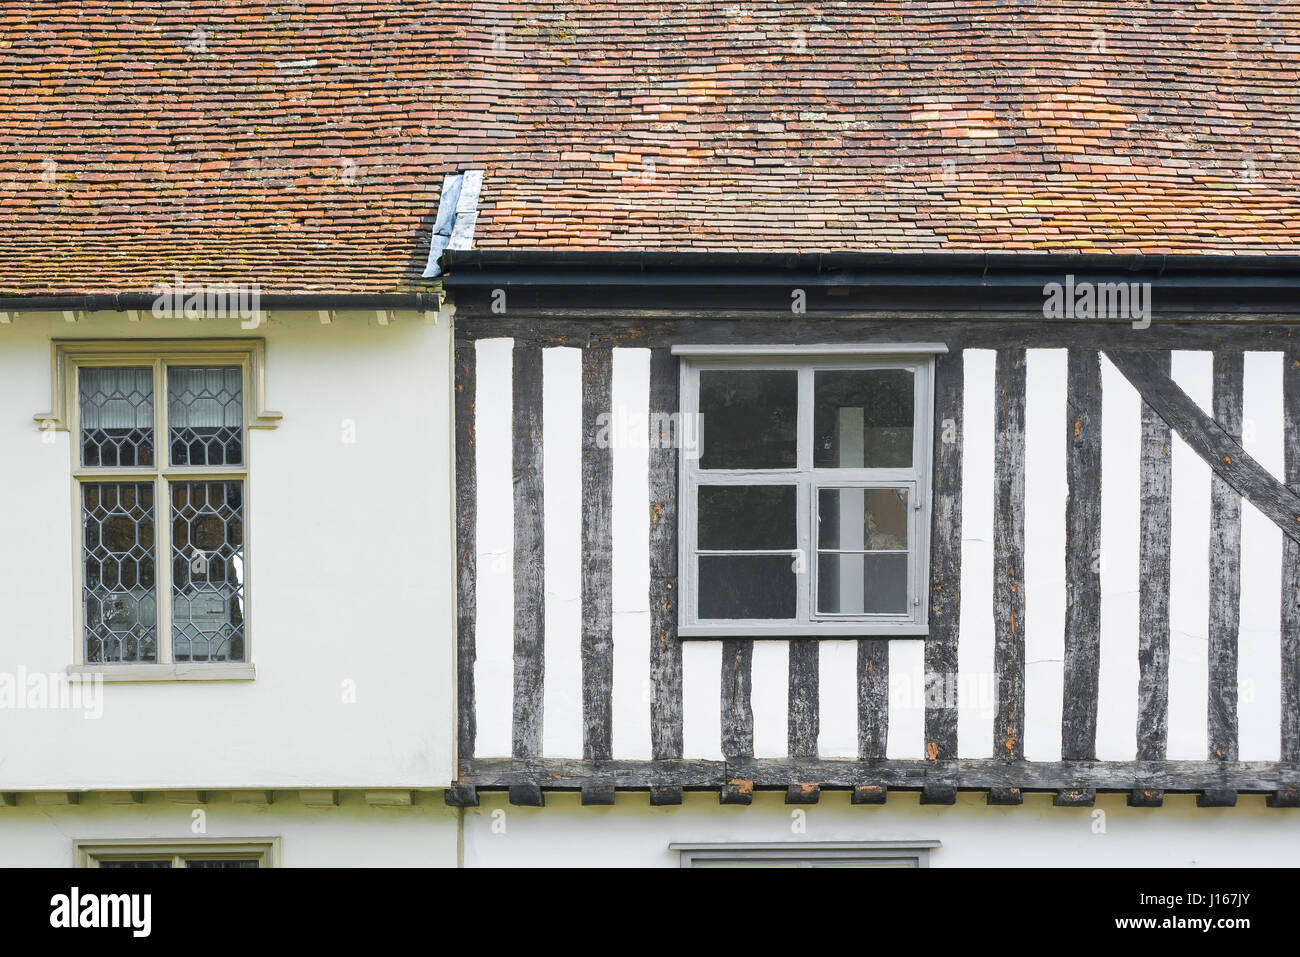 Bâtiment médiéval, Suffolk, détail des terrasses des maisons médiévales dans le Suffolk ville de Maidstone, Angleterre, Royaume-Uni. Banque D'Images